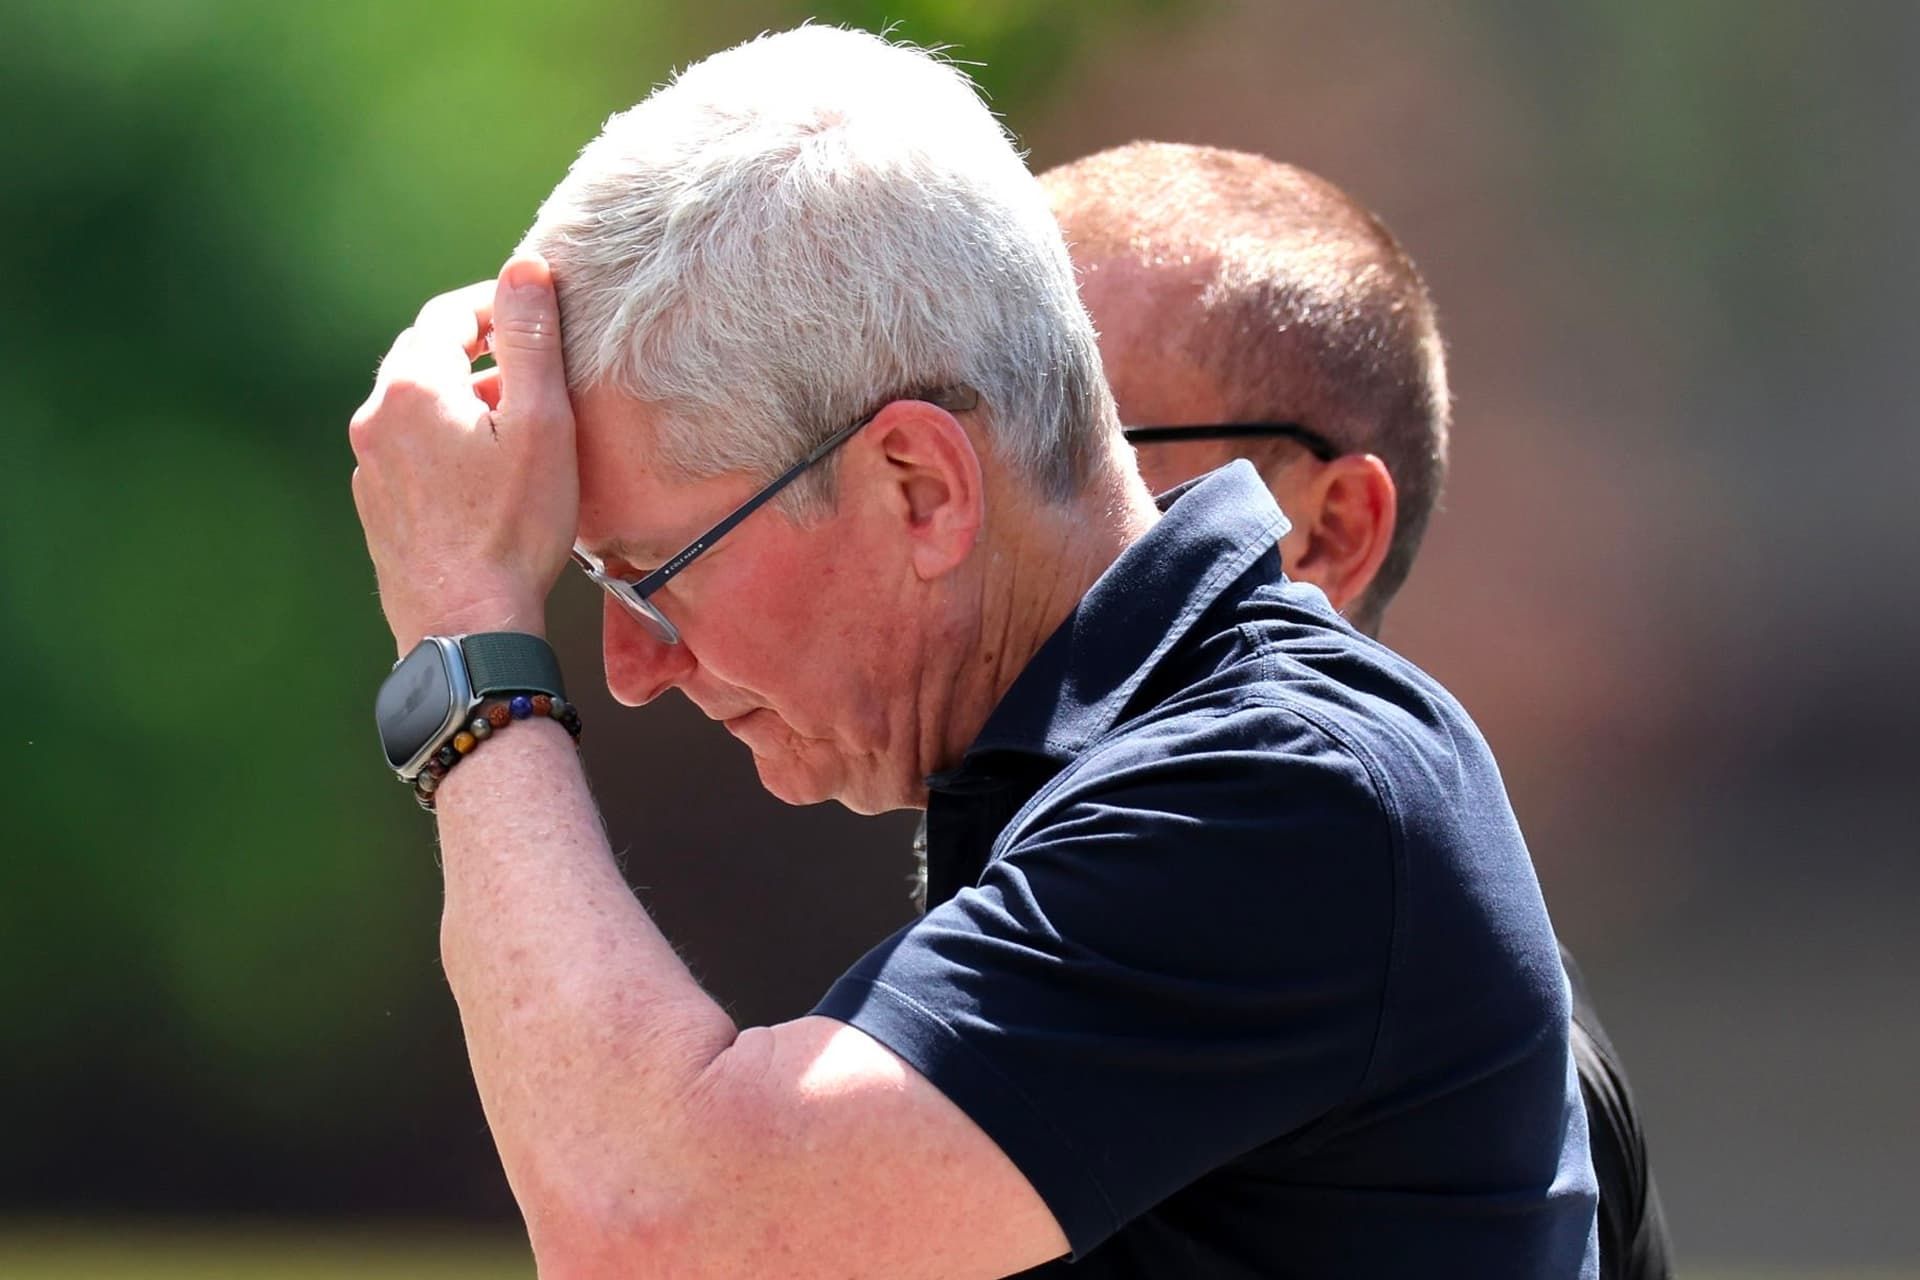 ناراحتی تیم کوک / Tim Cook مدیرعامل اپل روز روشن دست روی سر